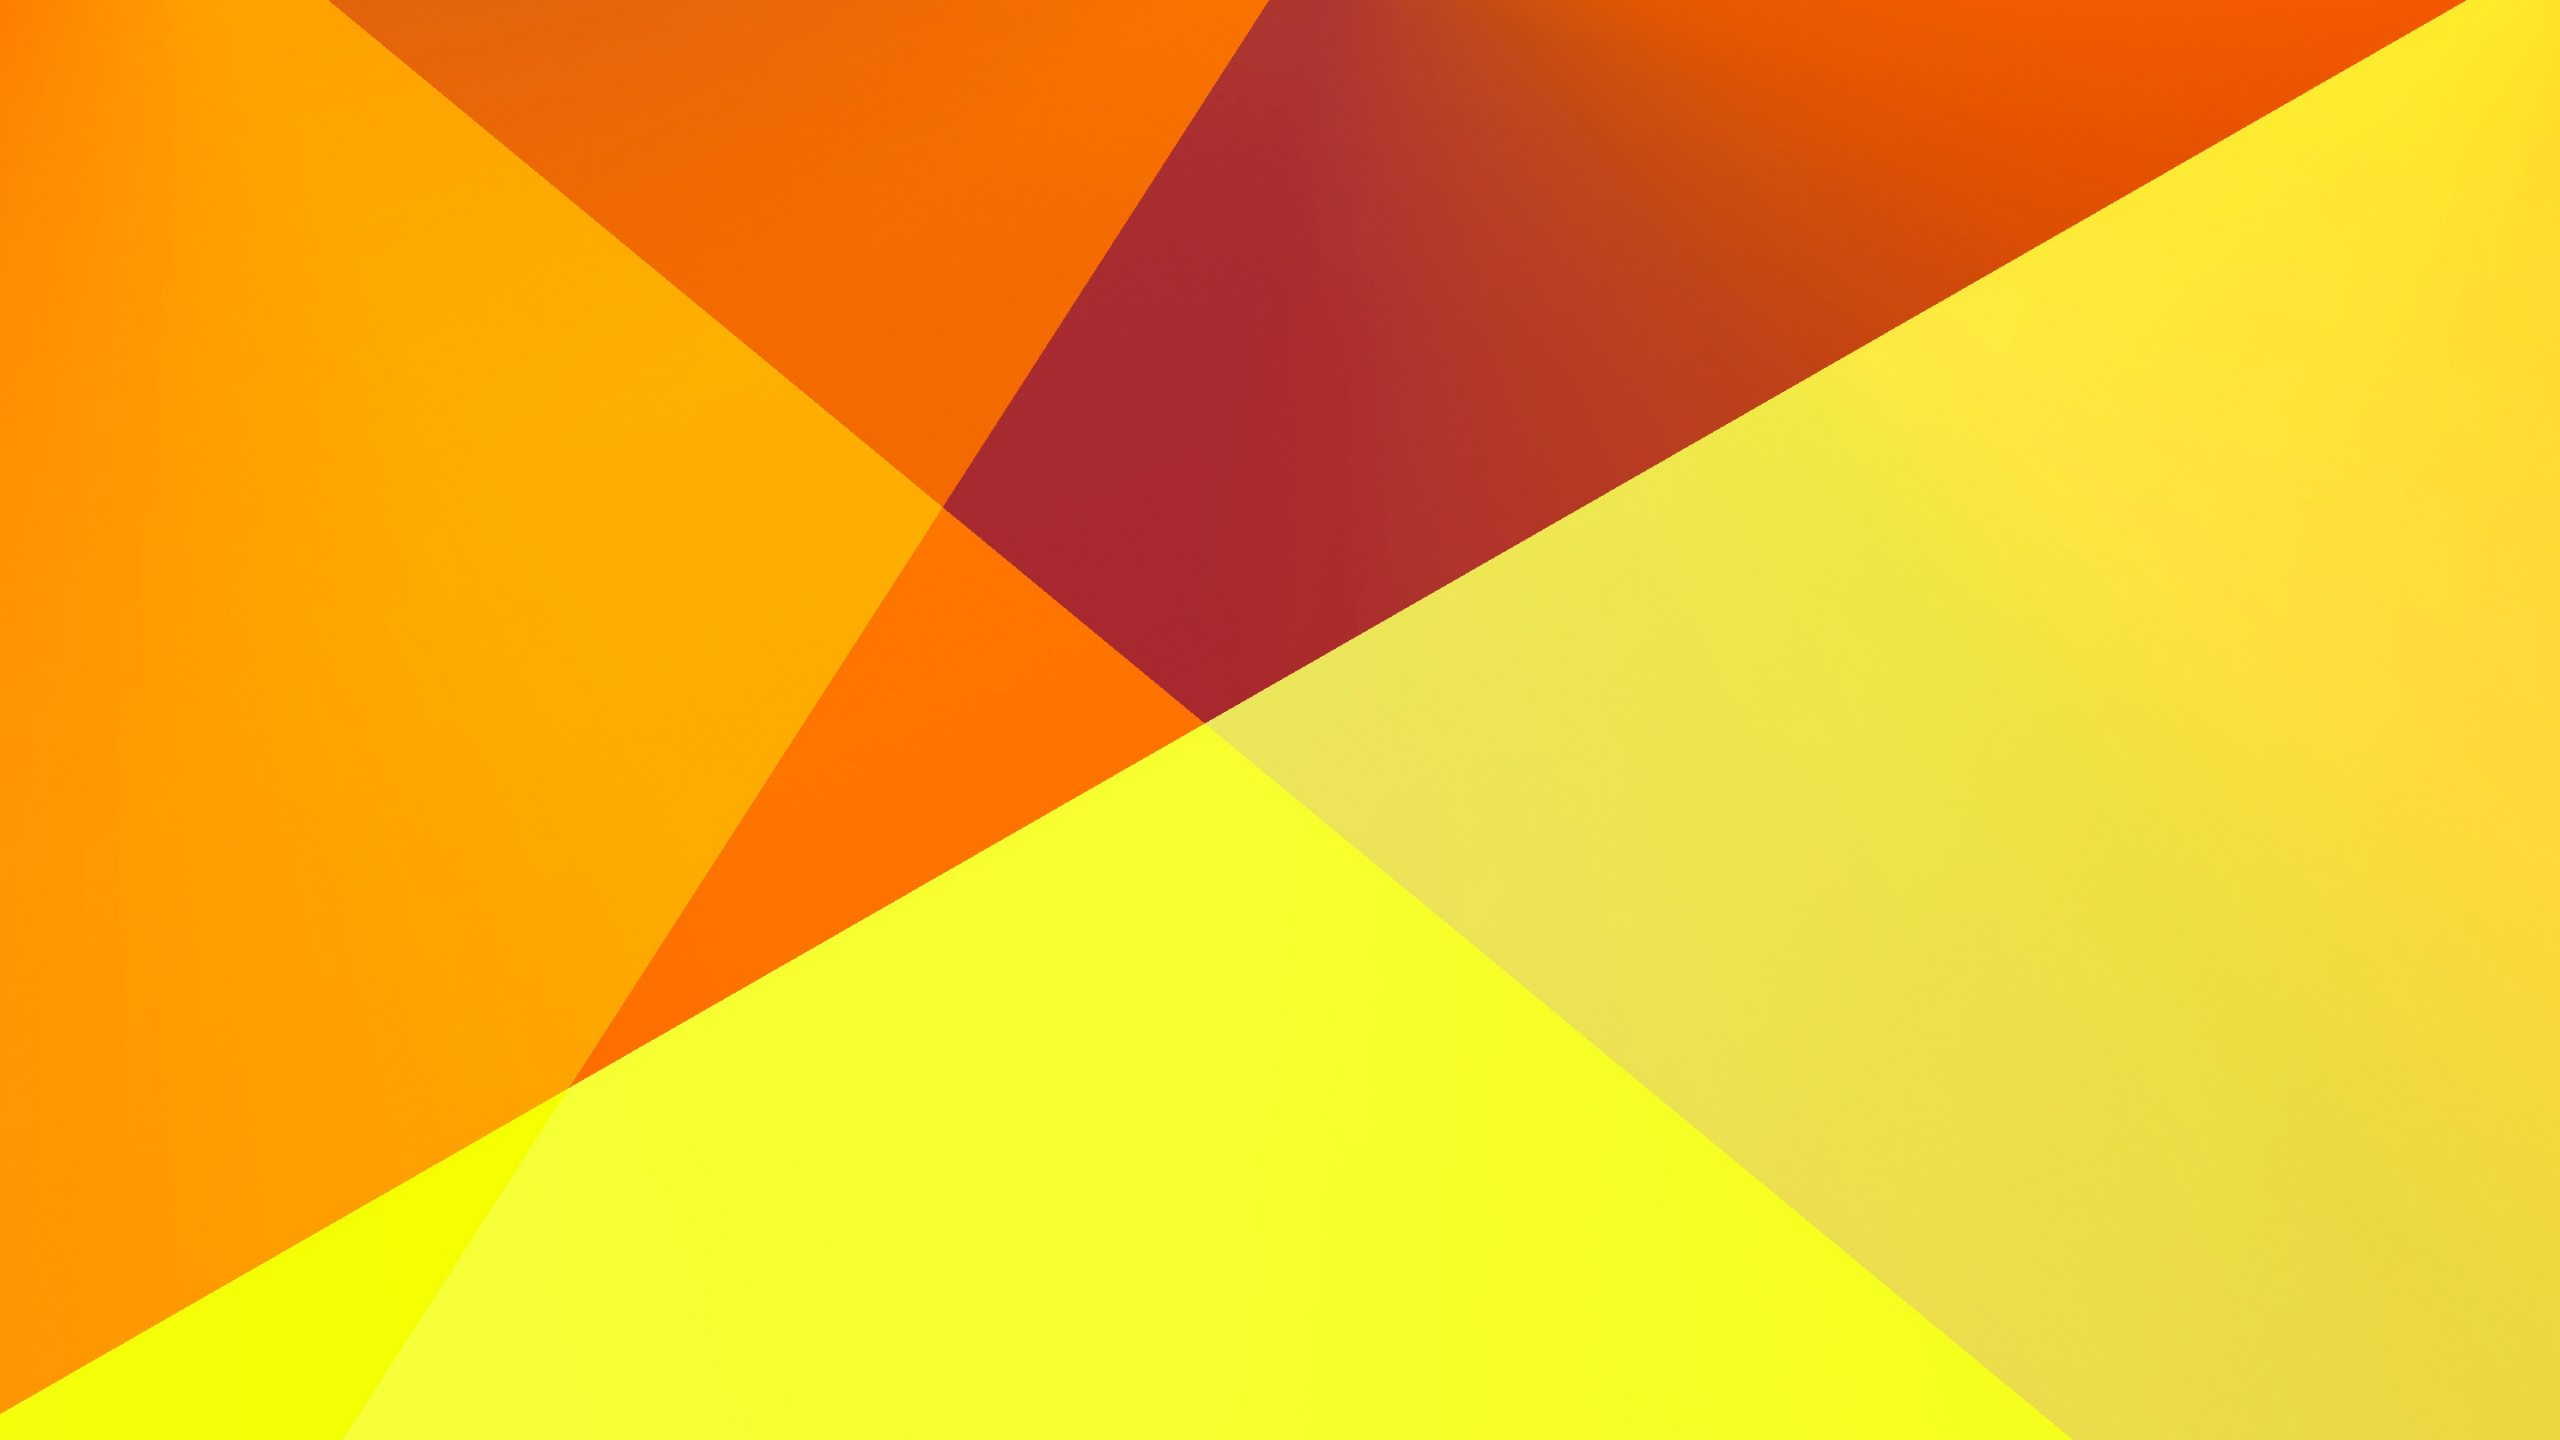 橙色, 黄色的, 三角形, 天空, 的信息 壁纸 2560x1440 允许